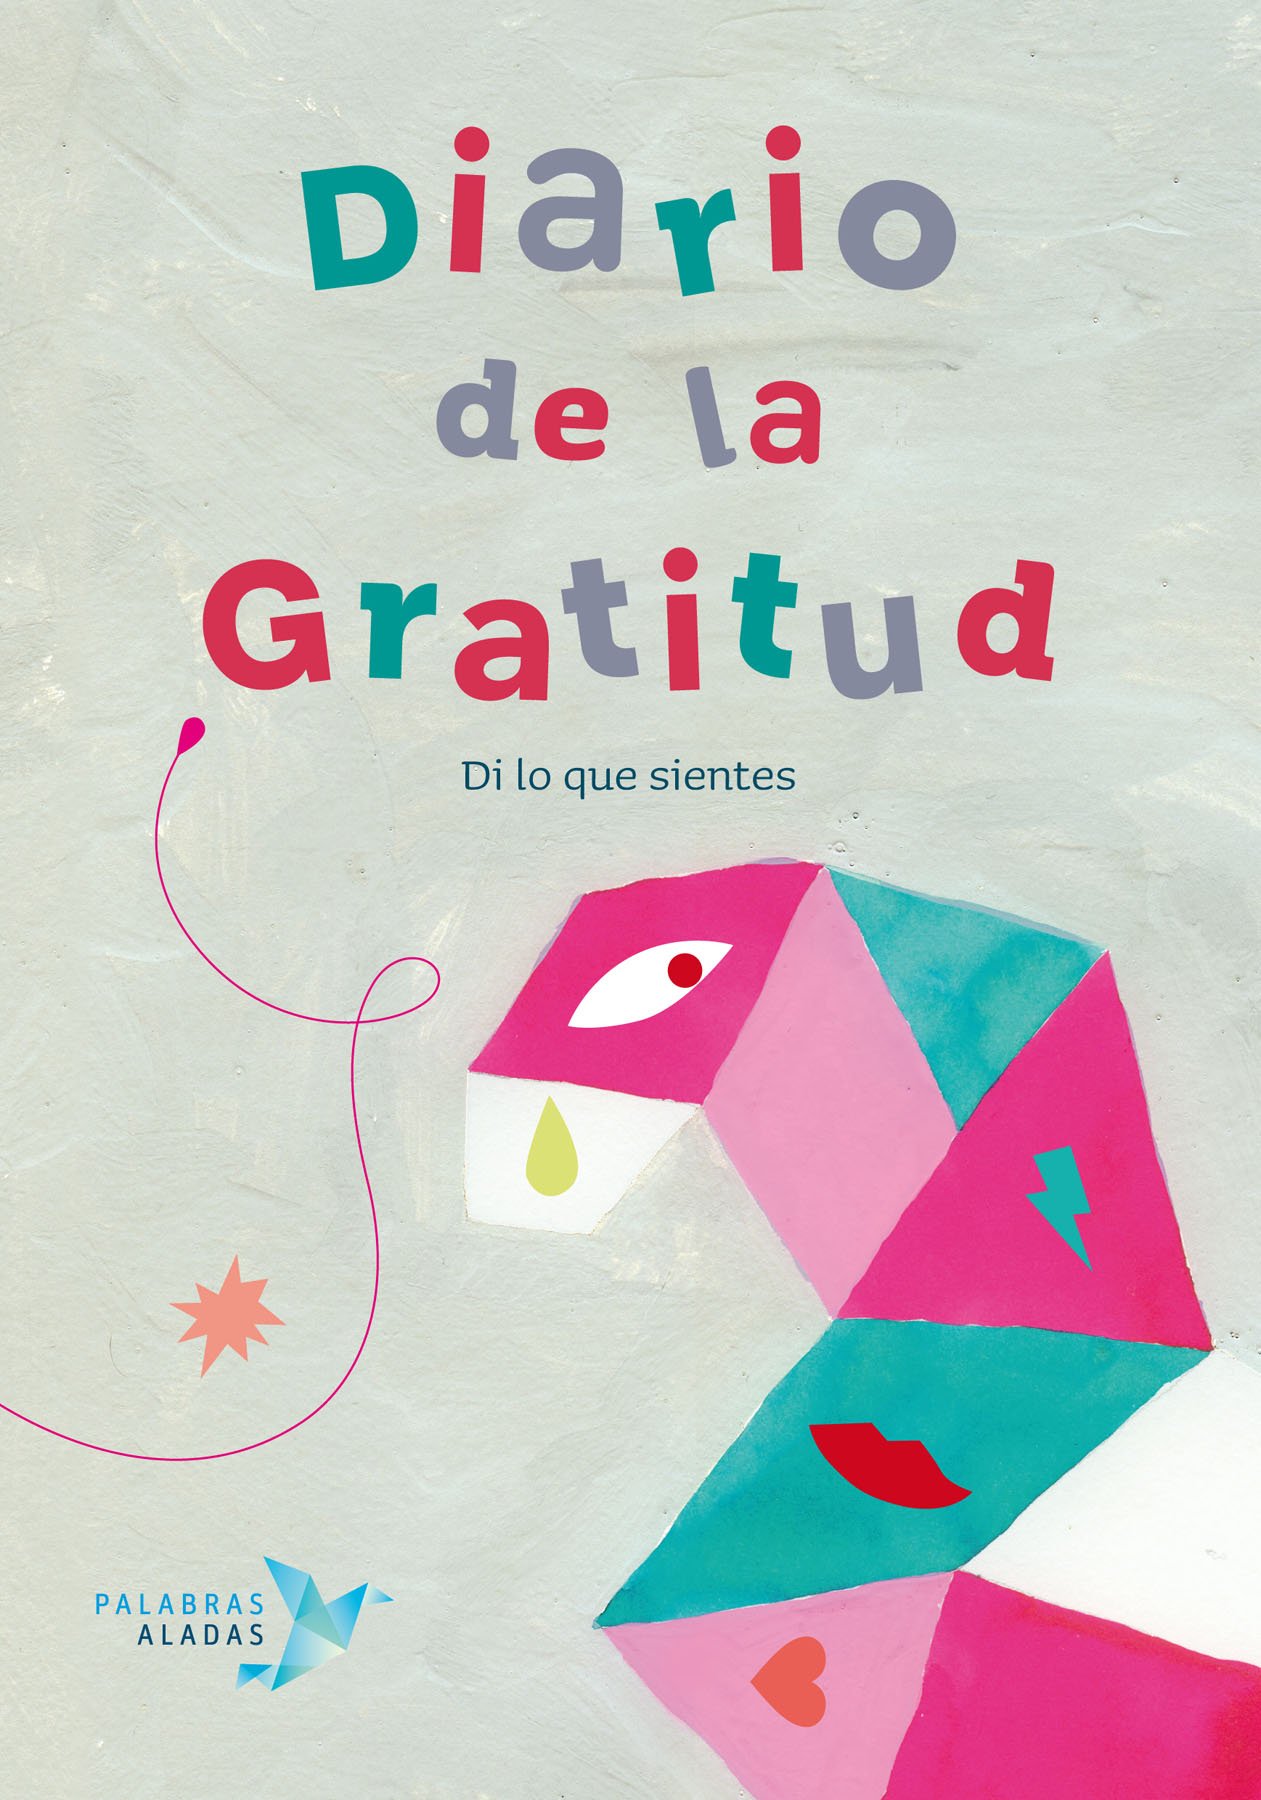 Resultado de imagen de Diario de Gratitud , Cristina Nuñez, Rafael R. Valcárcel